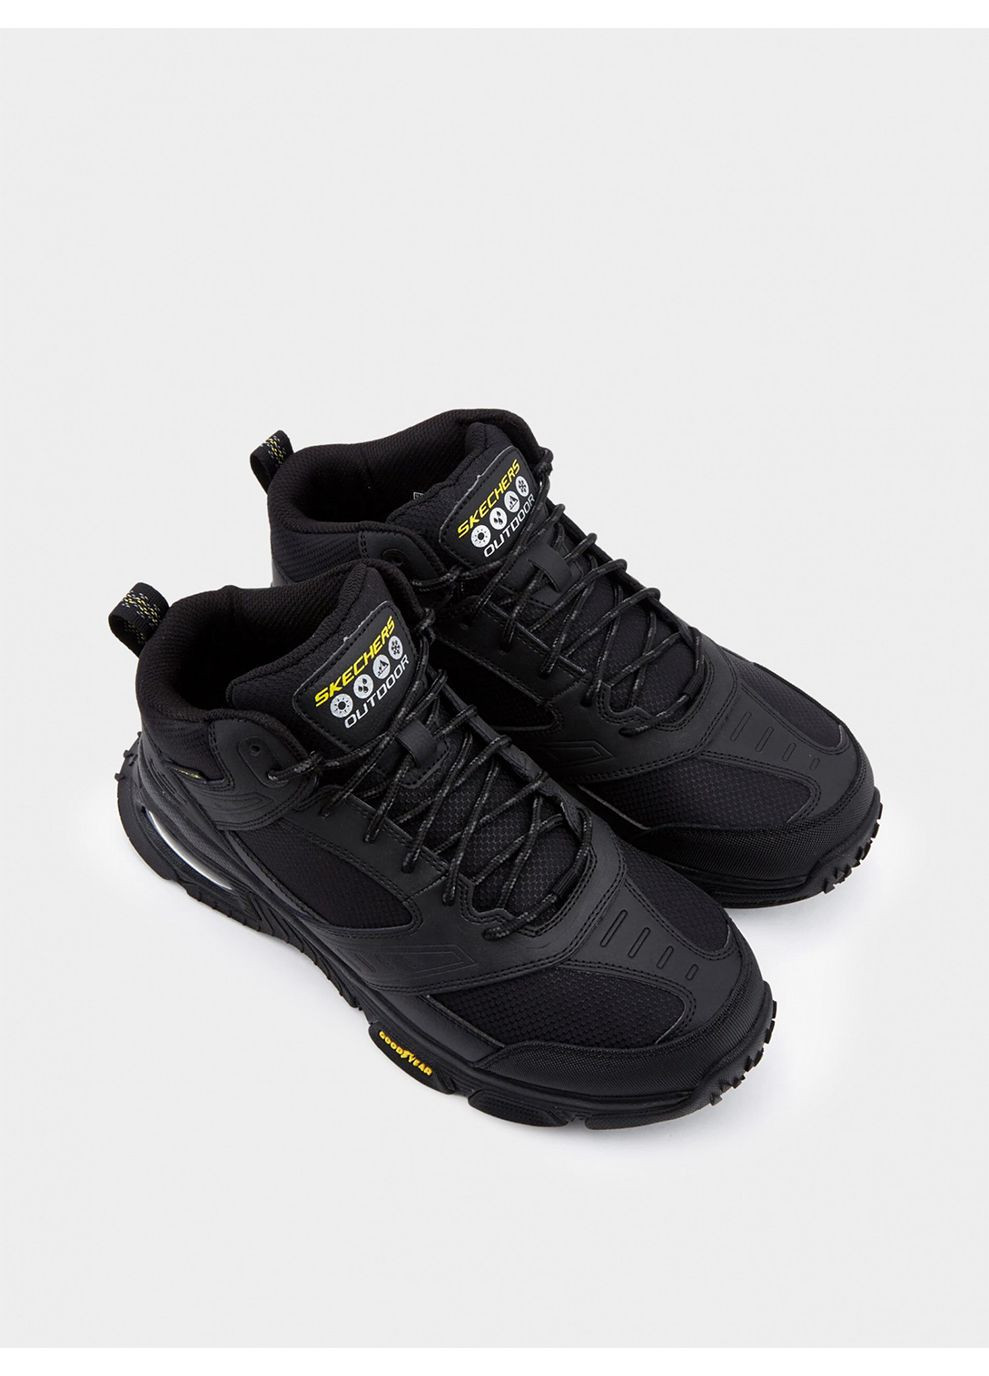 Черные осенние мужские ботинки черный Skechers